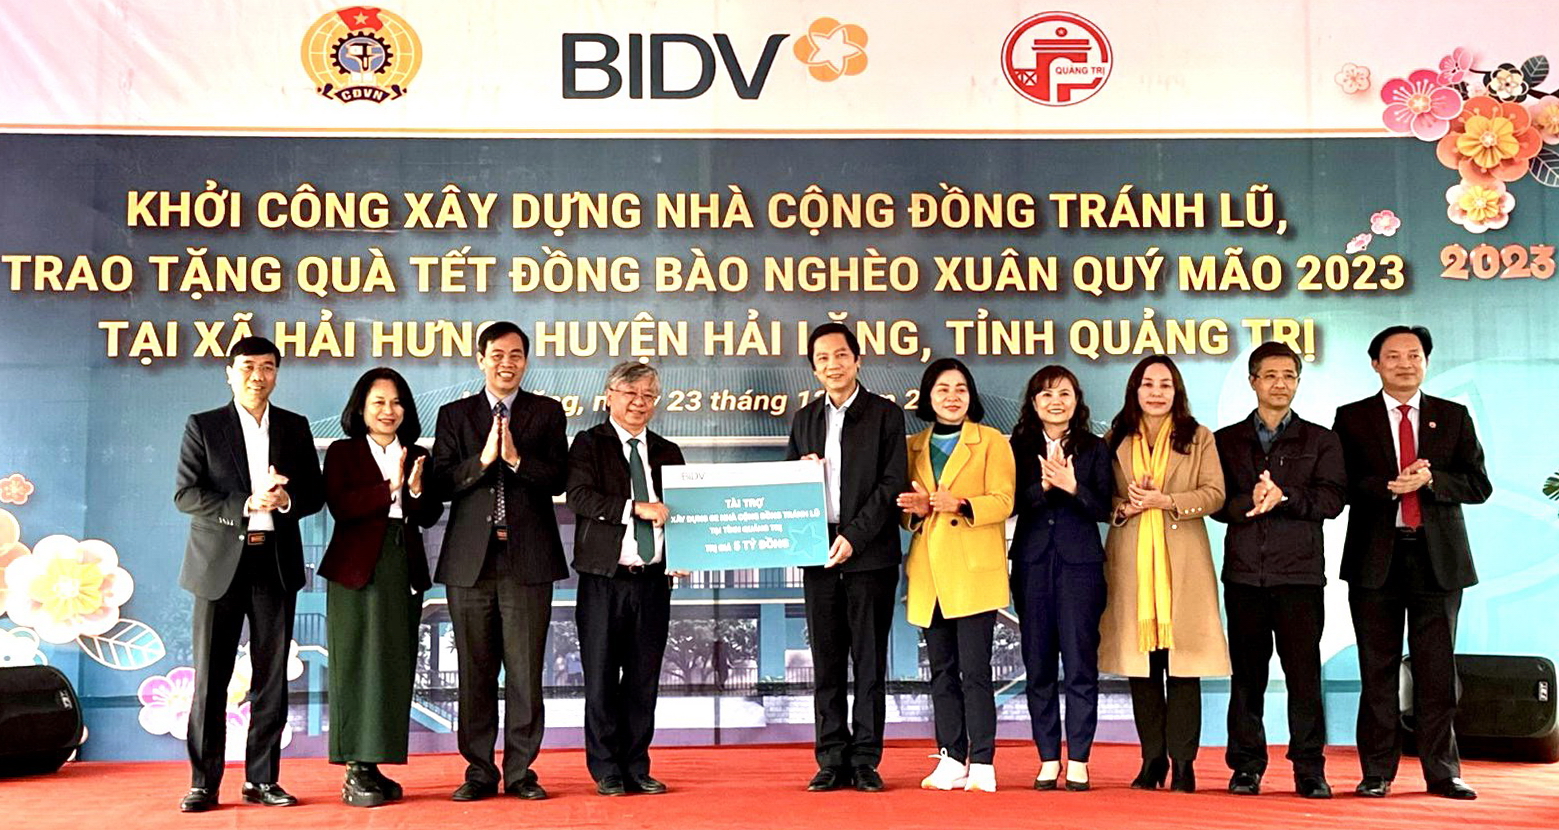 BIDV trao biển tài trợ 02 Nhà cộng đồng tránh lũ tại Quảng Trị.